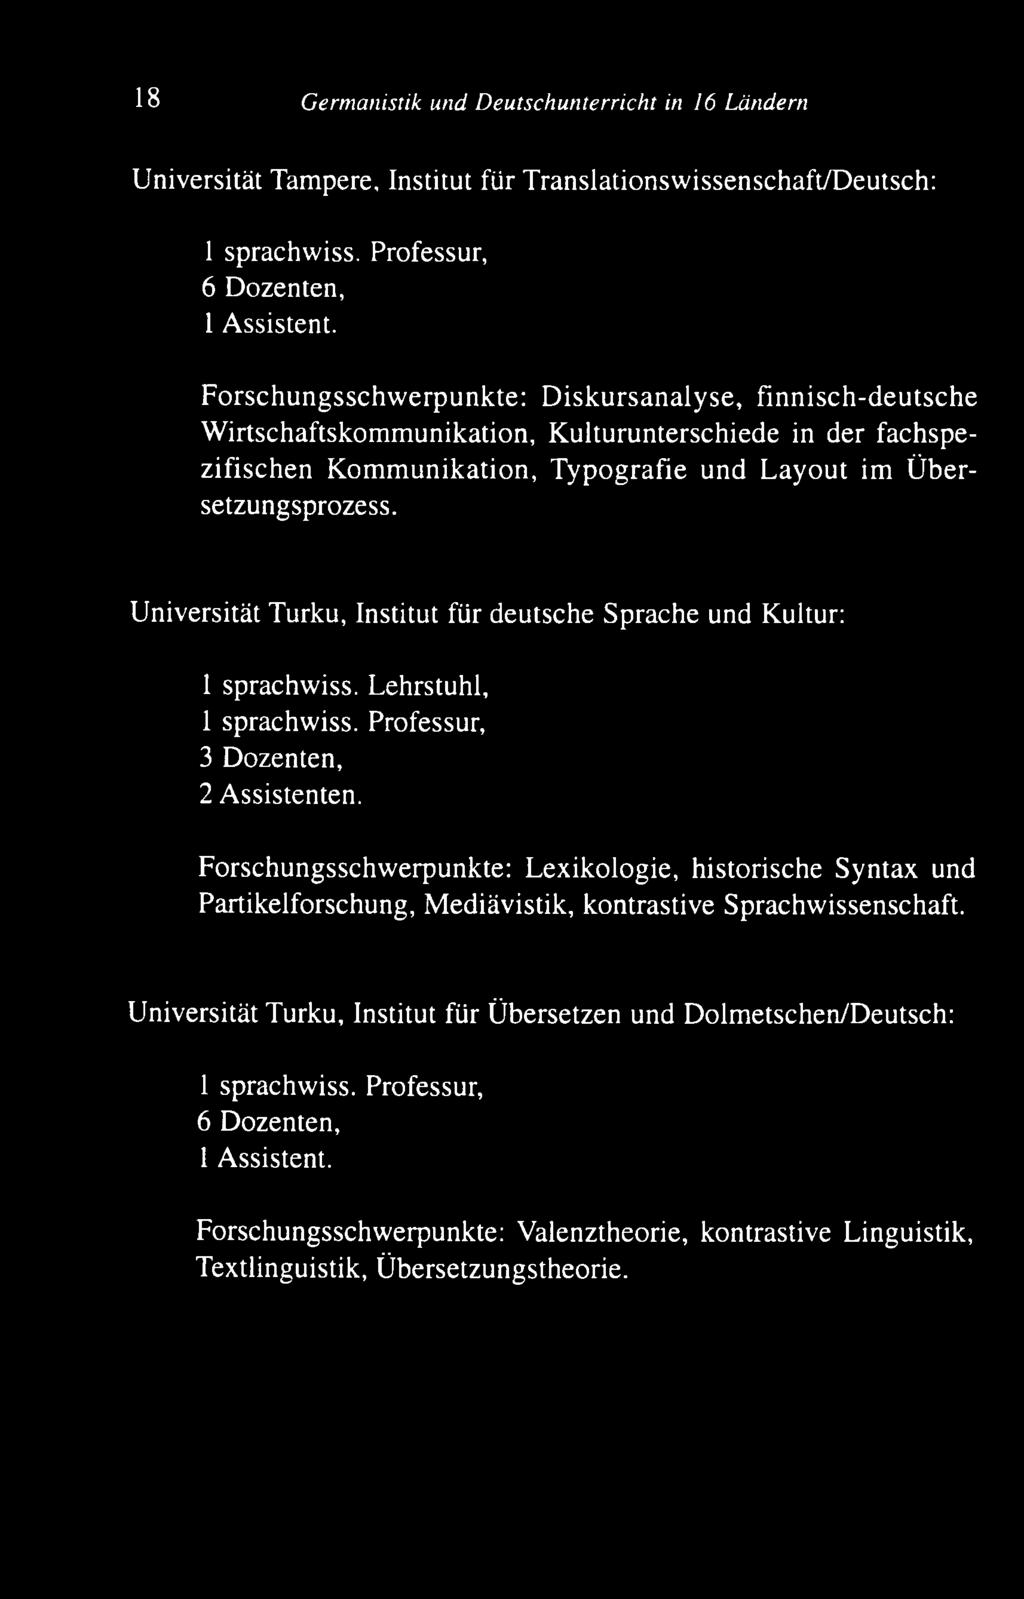 bersetzungsprozess. U niversität Turku, Institut für deutsche S prache und Kultur: 1 sprachw iss. L ehrstuhl, 1 sprachw iss. Professur, 3 Dozenten, 2 Assistenten.